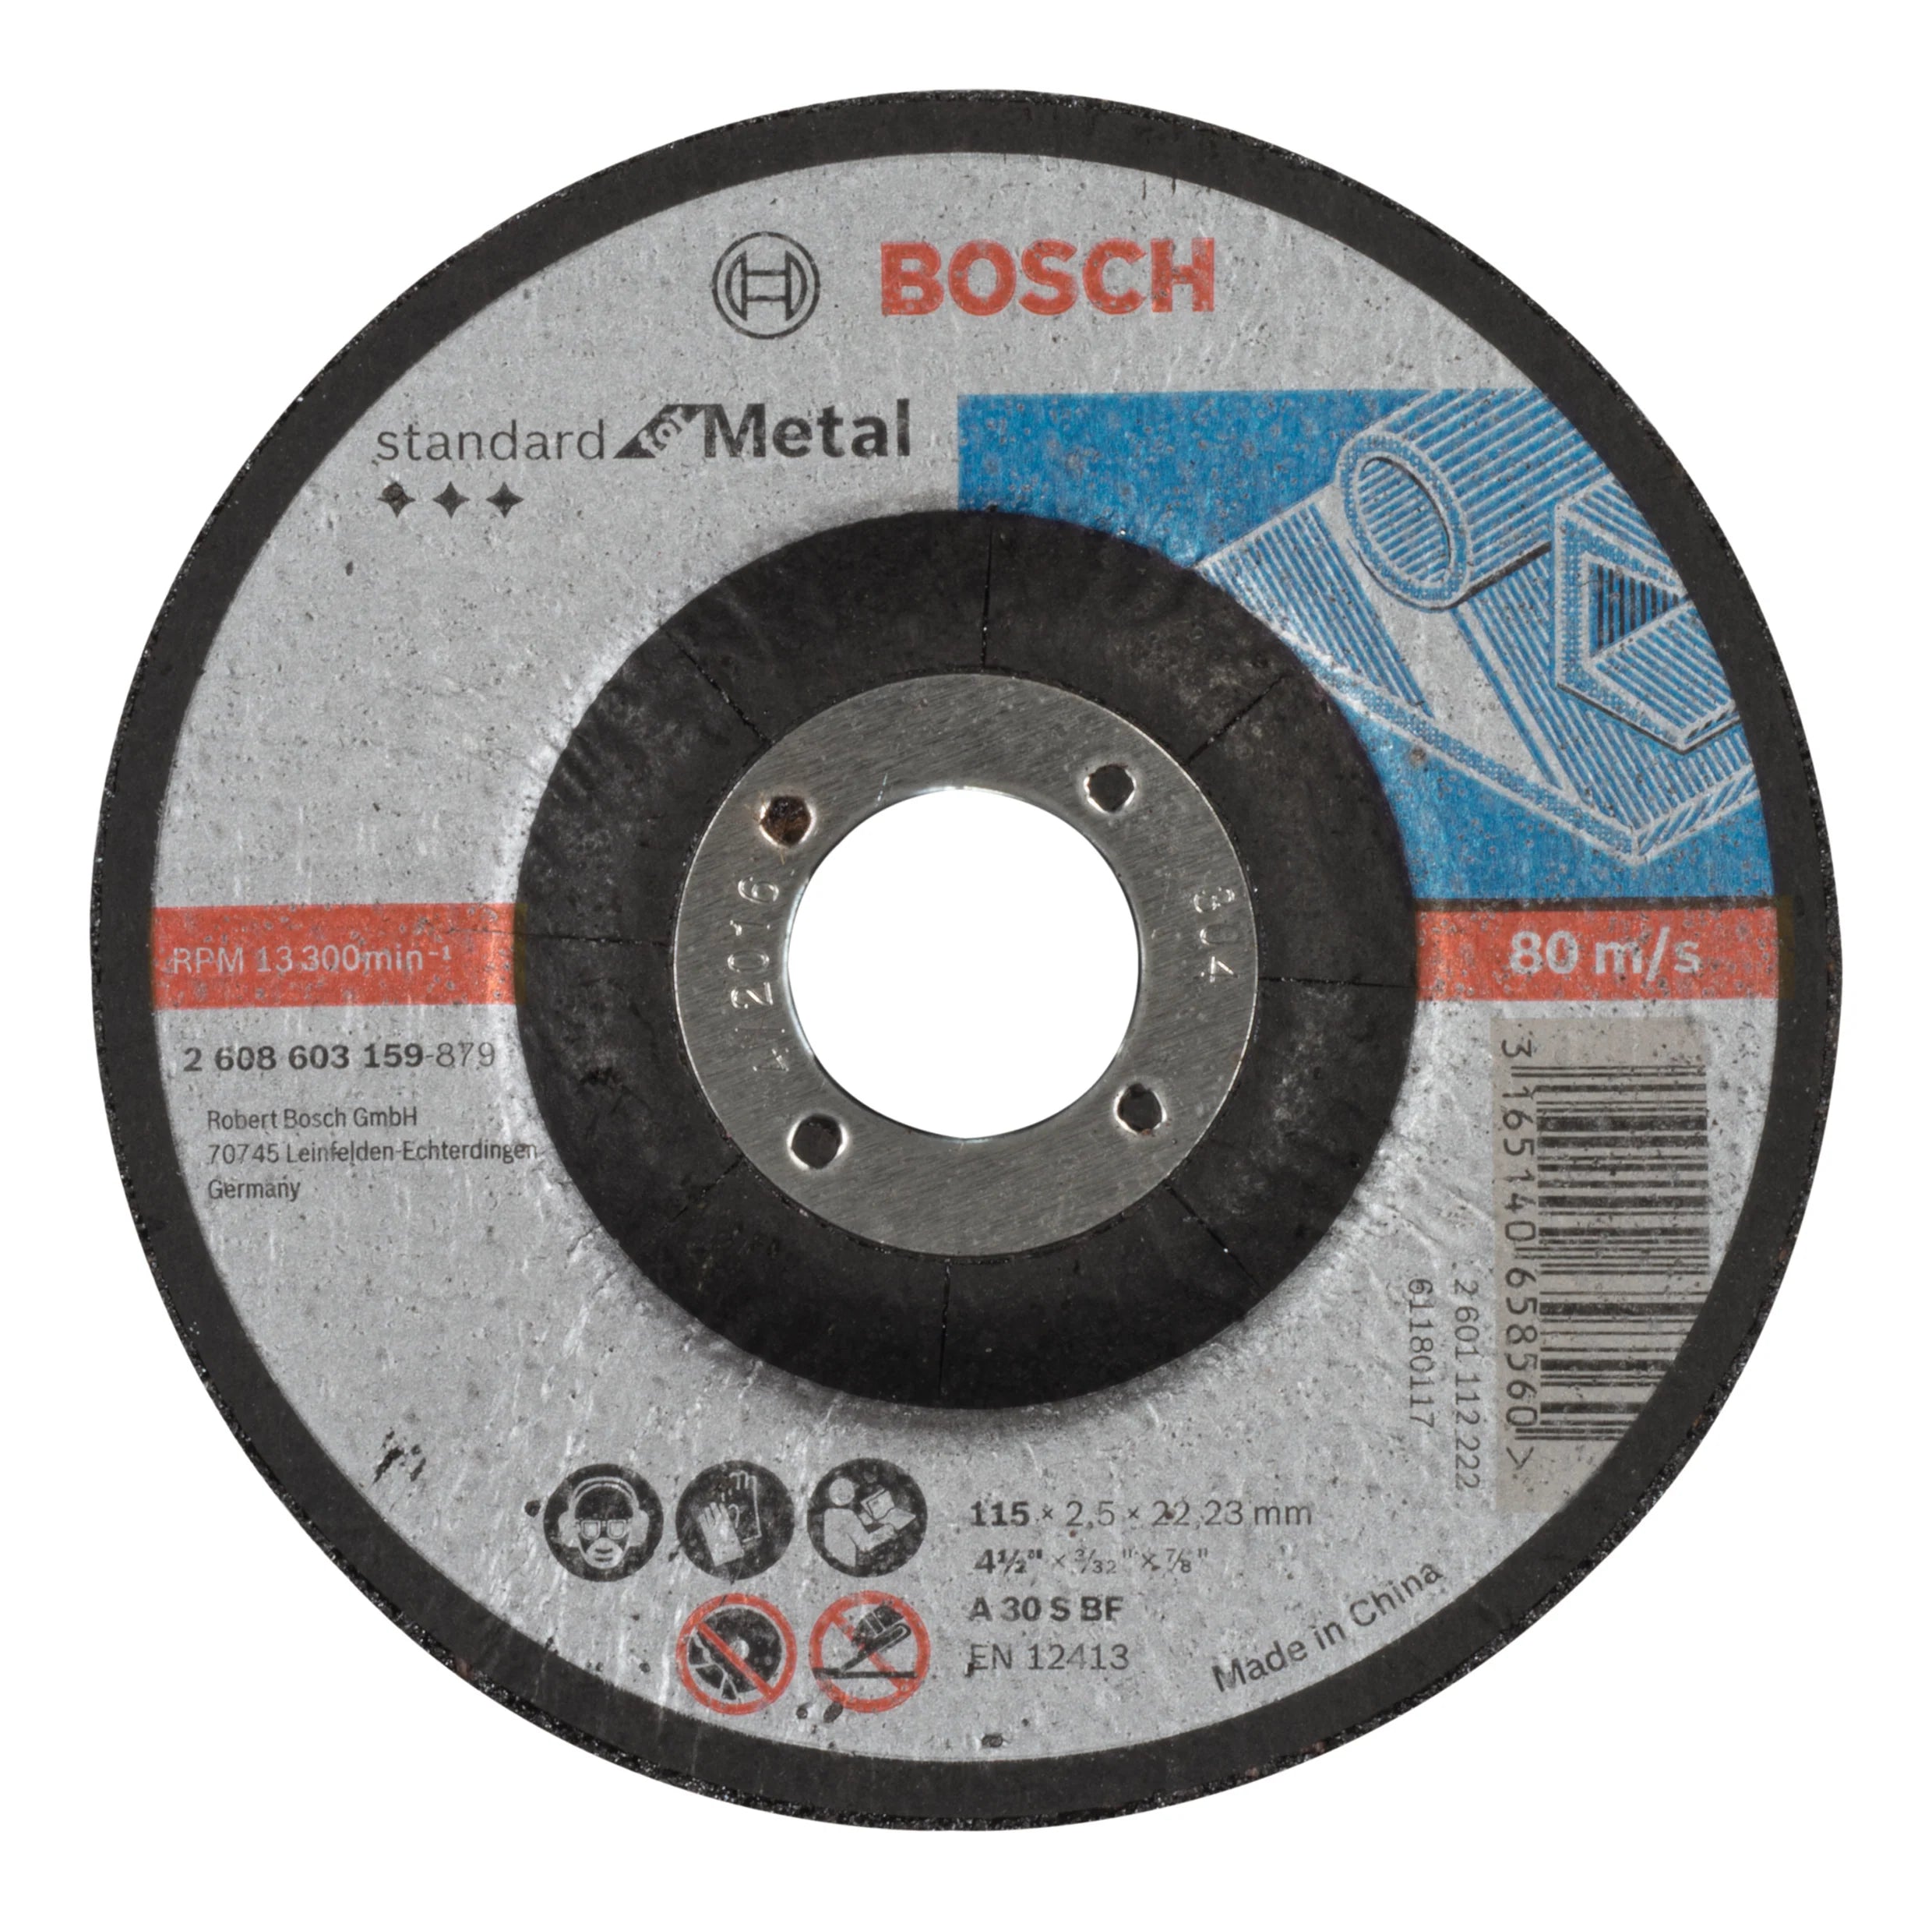 Bosch Std Metal Disc 115X2.5X22.23Mm D 2608603159 Power Tool Services